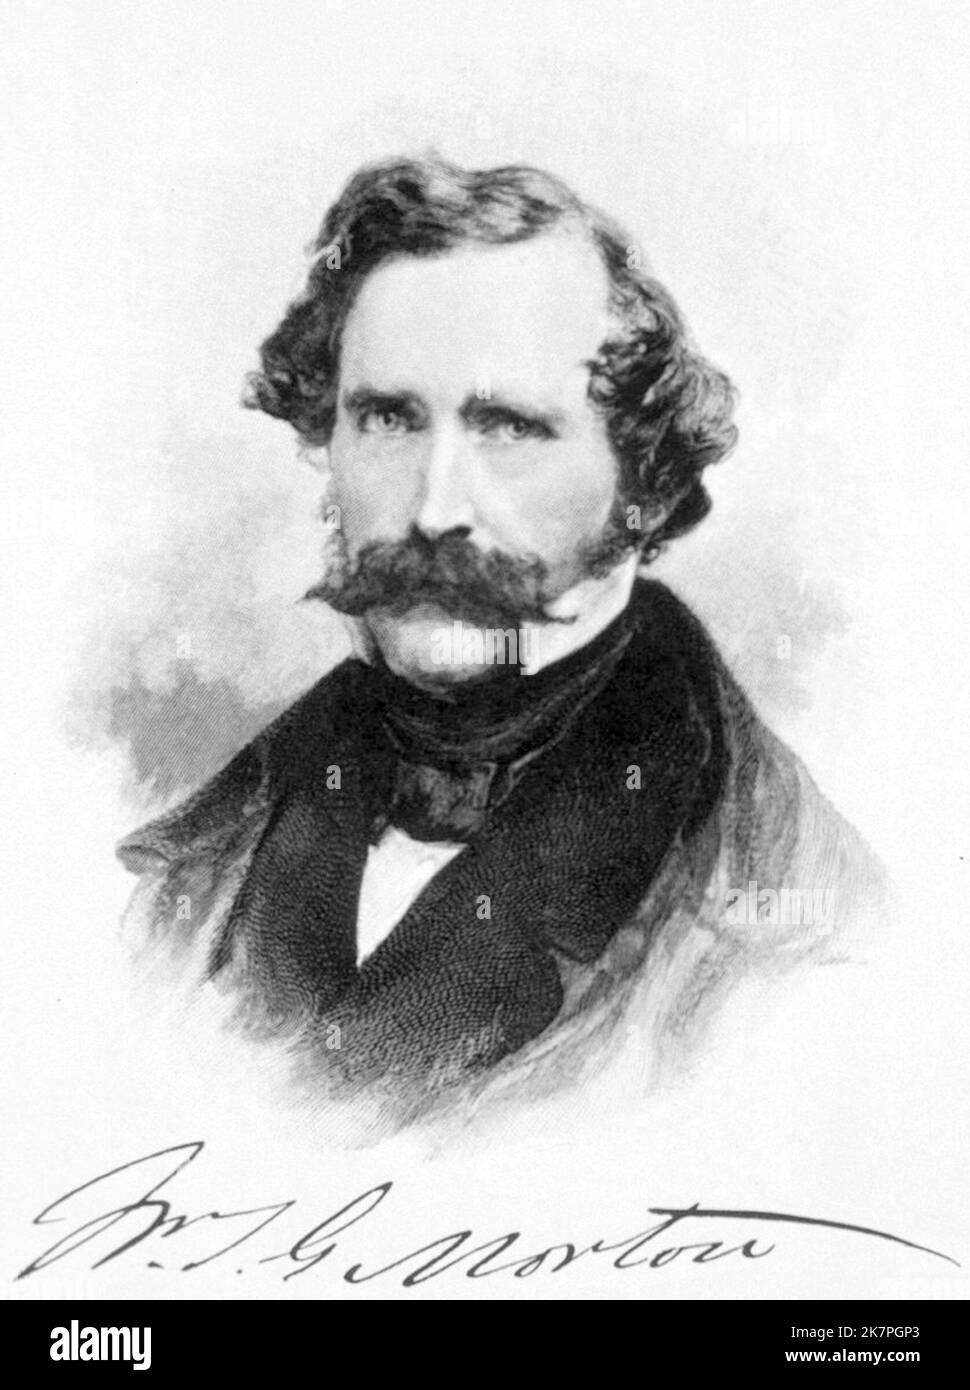 William Morton, William Thomas Green Morton (1819 – 1868) amerikanischer Zahnarzt und Arzt, der 1846 erstmals öffentlich den Einsatz von inhaliertem Äther als Operationsanest demonstrierte. Stockfoto